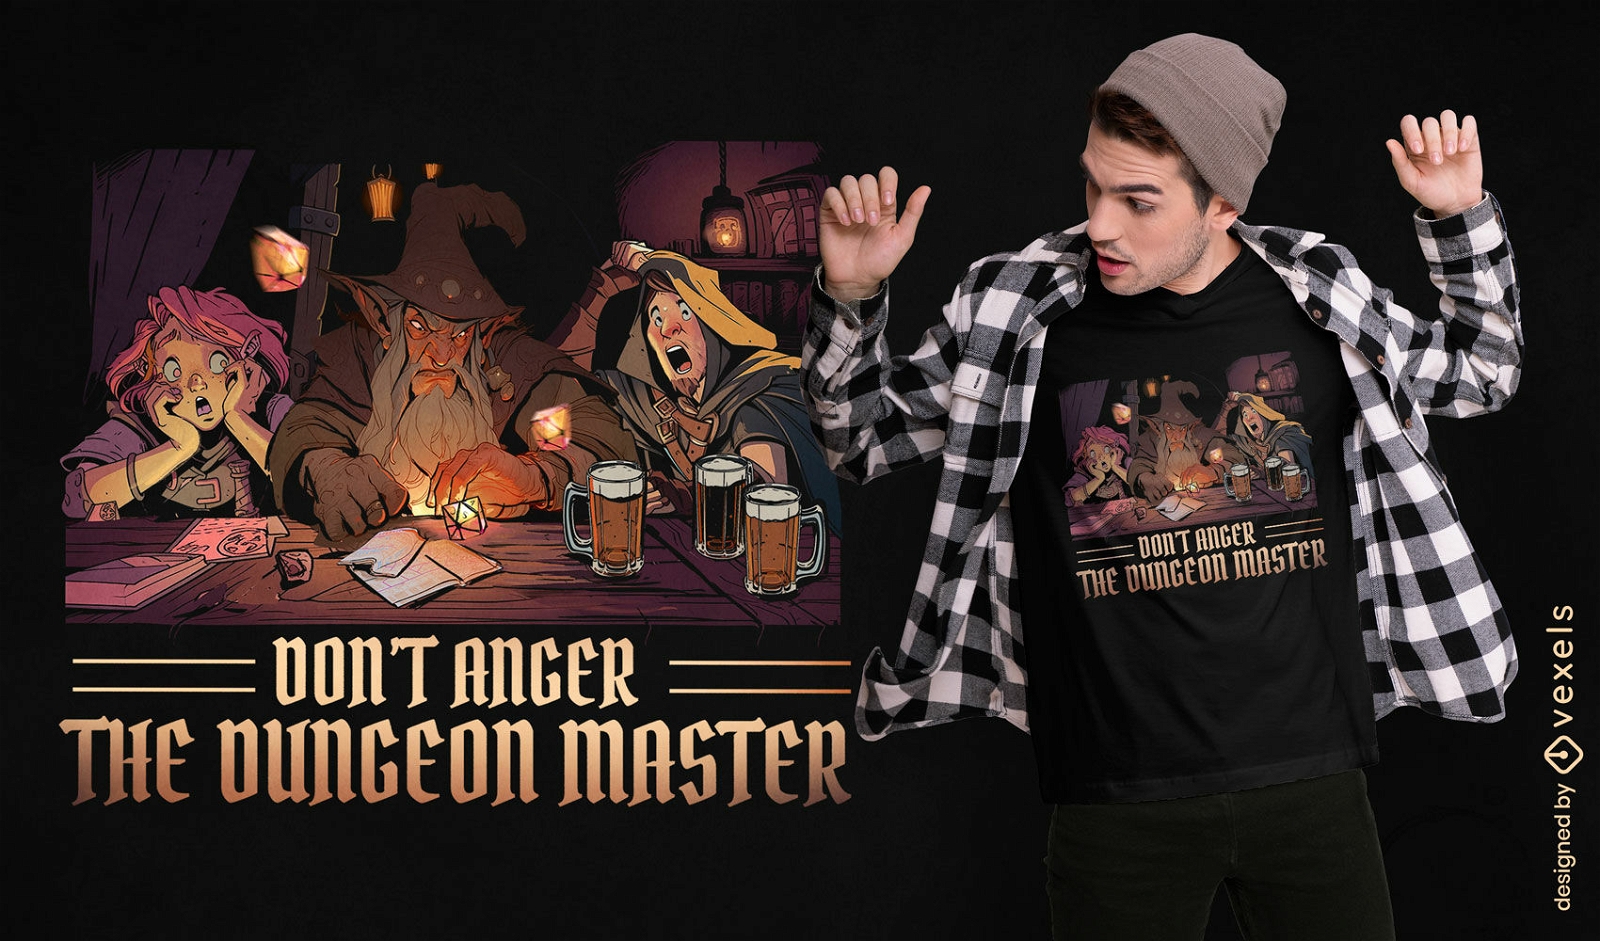 Dise?o de camiseta con cita de juego de Dungeon Master.